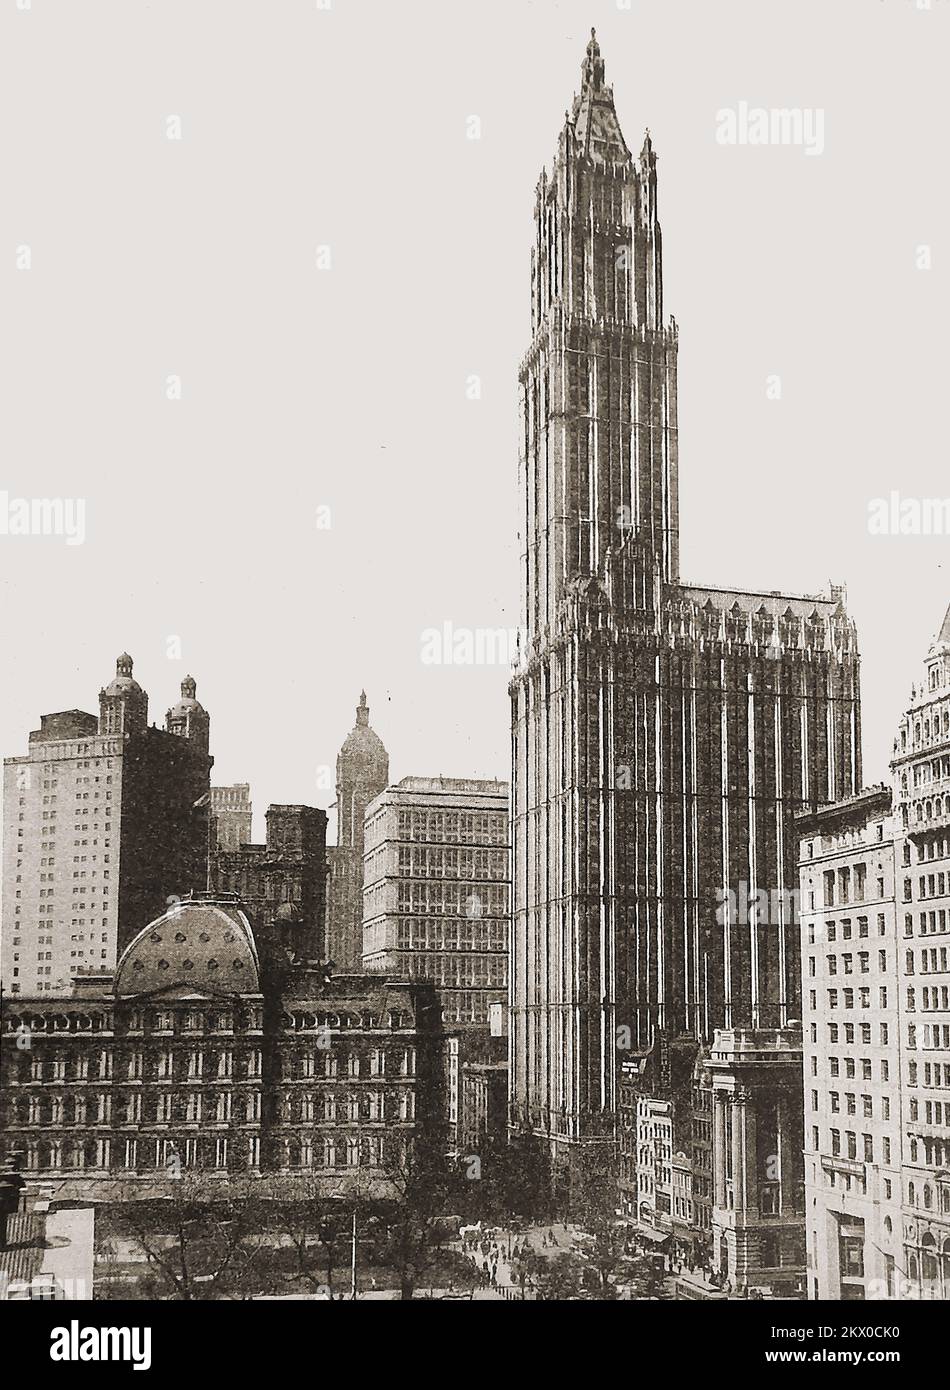 New Yorker Straßenszene aus den 40er Jahren mit dem majestätischen Woolworth Building, entworfen vom Architekten Cass Gilbert. Seine Lage ist der Broadway 233 in Manhattan, New York City. Geplant war es von F. W. Woolworth, dem Gründer der Handelsmarke mit demselben Namen wie der Hauptsitz seines Unternehmens. Die Bauarbeiten begannen 1910 und das Gebäude wurde im April 24. 1913 offiziell eröffnet. Stockfoto